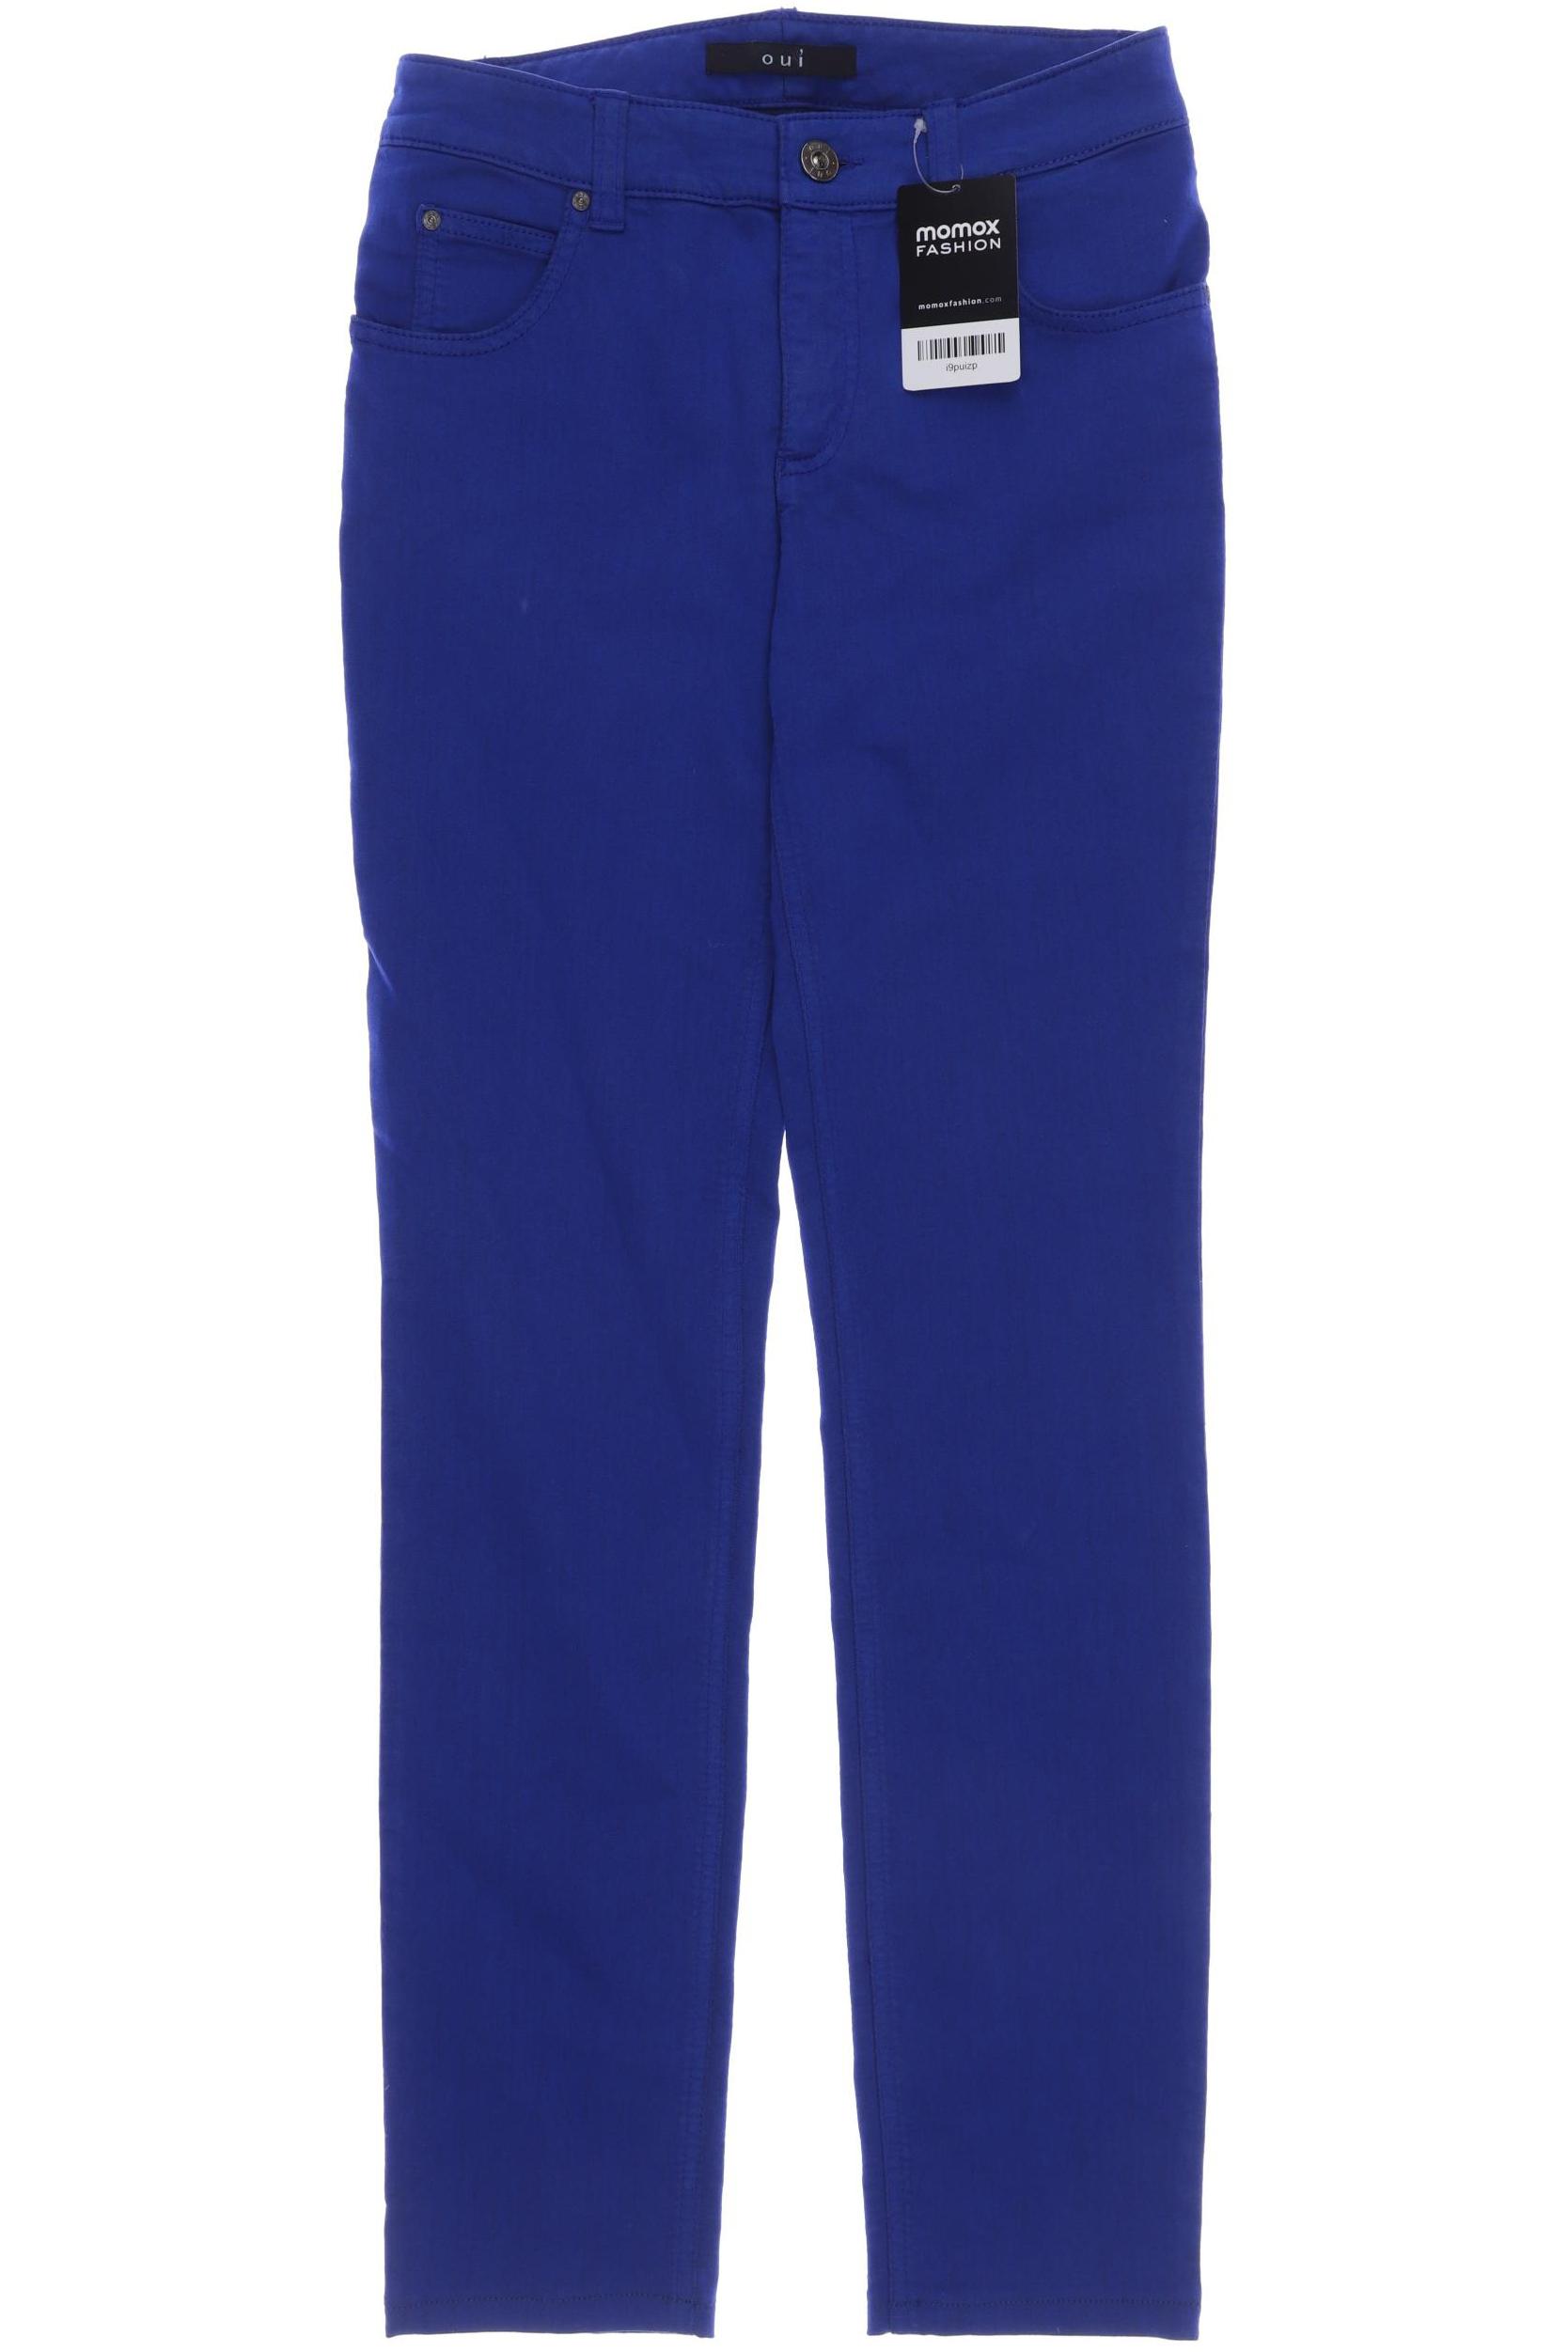 Oui Damen Jeans, blau, Gr. 34 von Oui